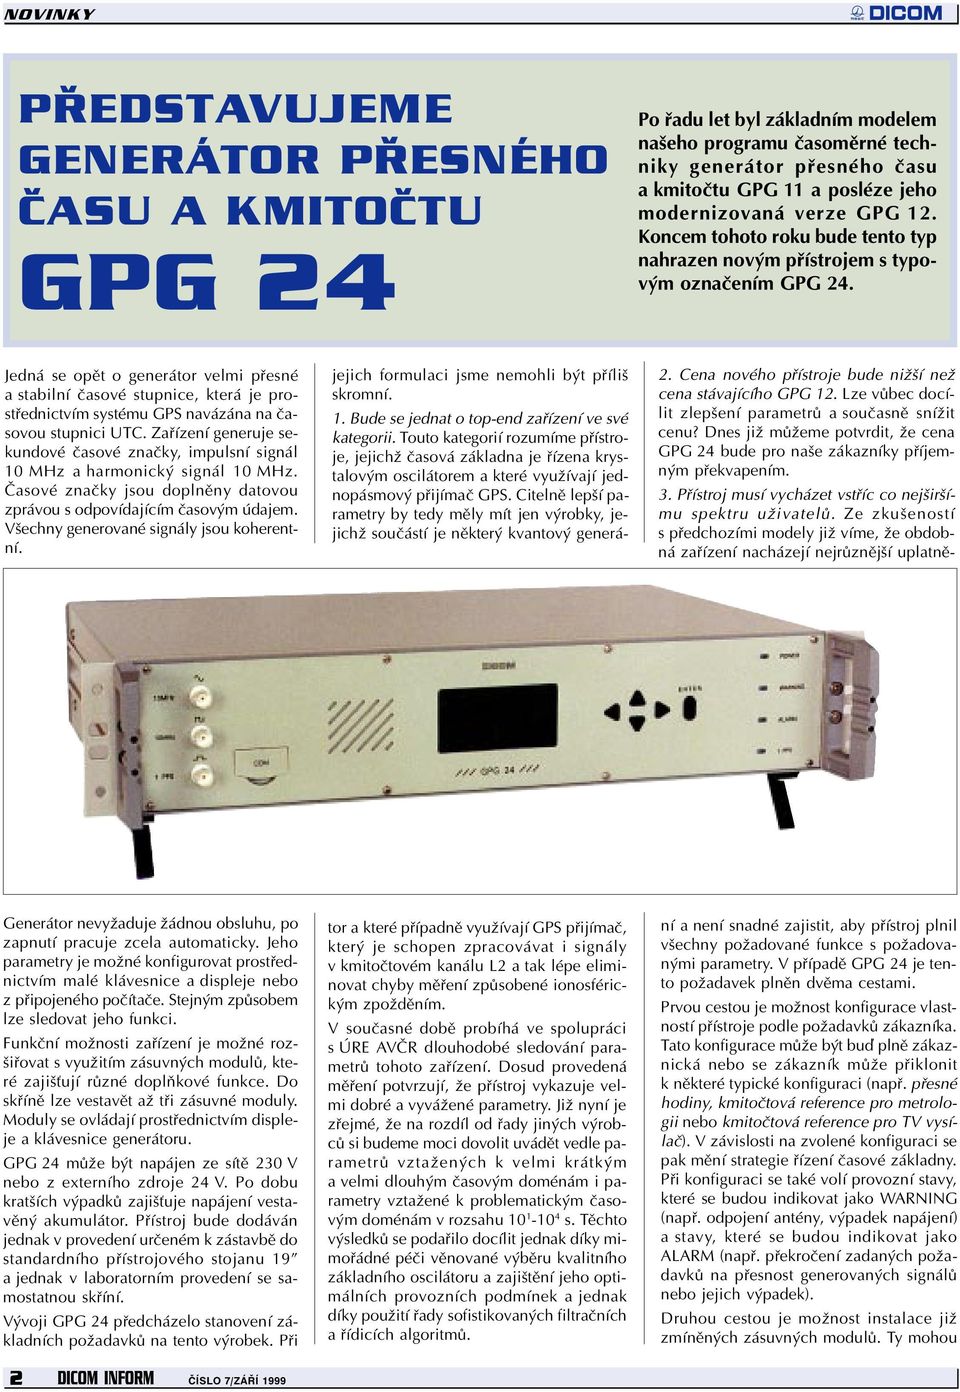 Jedná se opìt o generátor velmi pøesné a stabilní èasové stupnice, která je prostøednictvím systému GPS navázána na èasovou stupnici UTC.